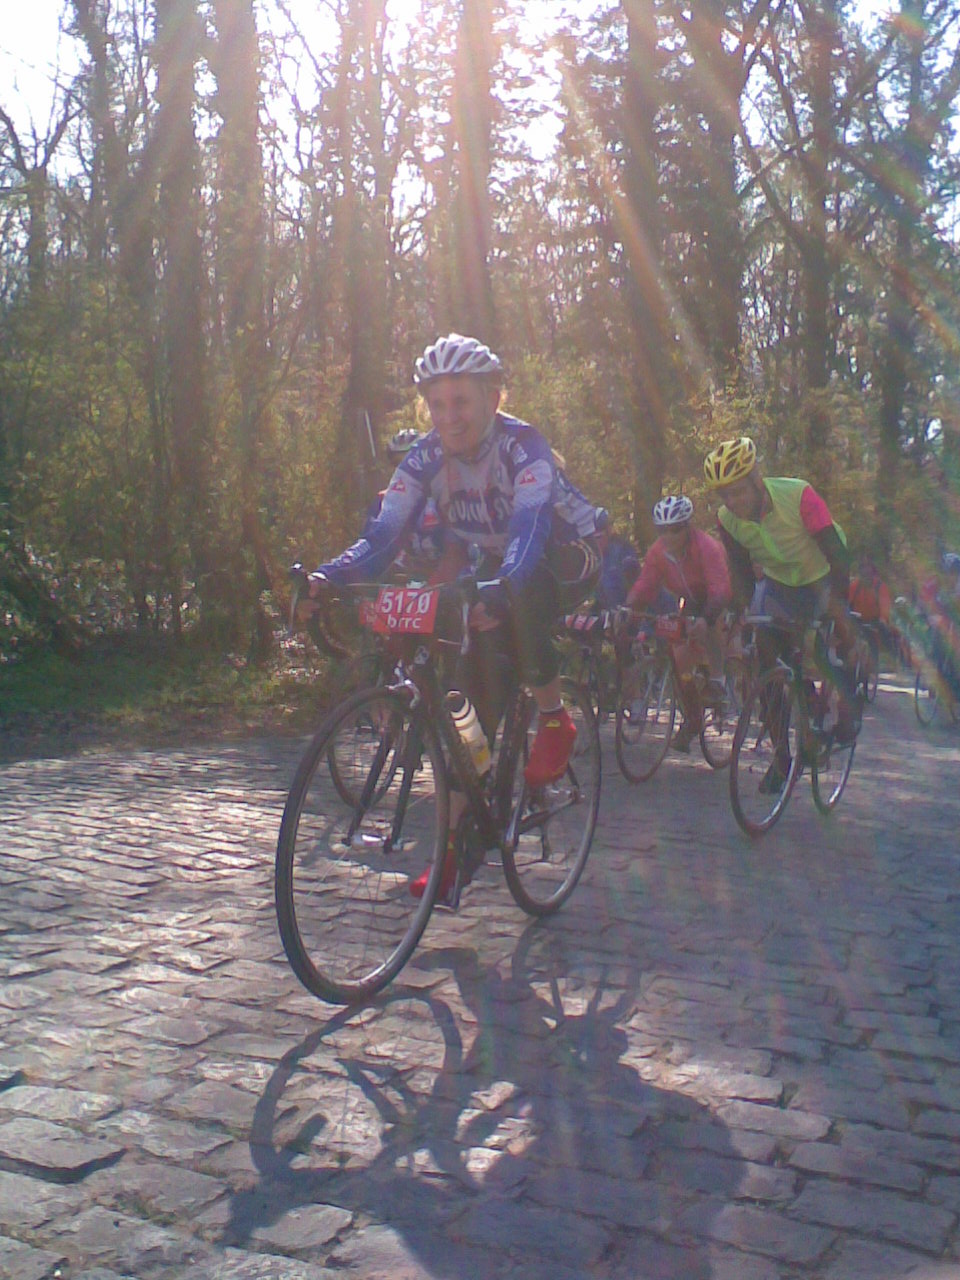 [Ronde+van+Vlaanderen+2007+003.jpg]